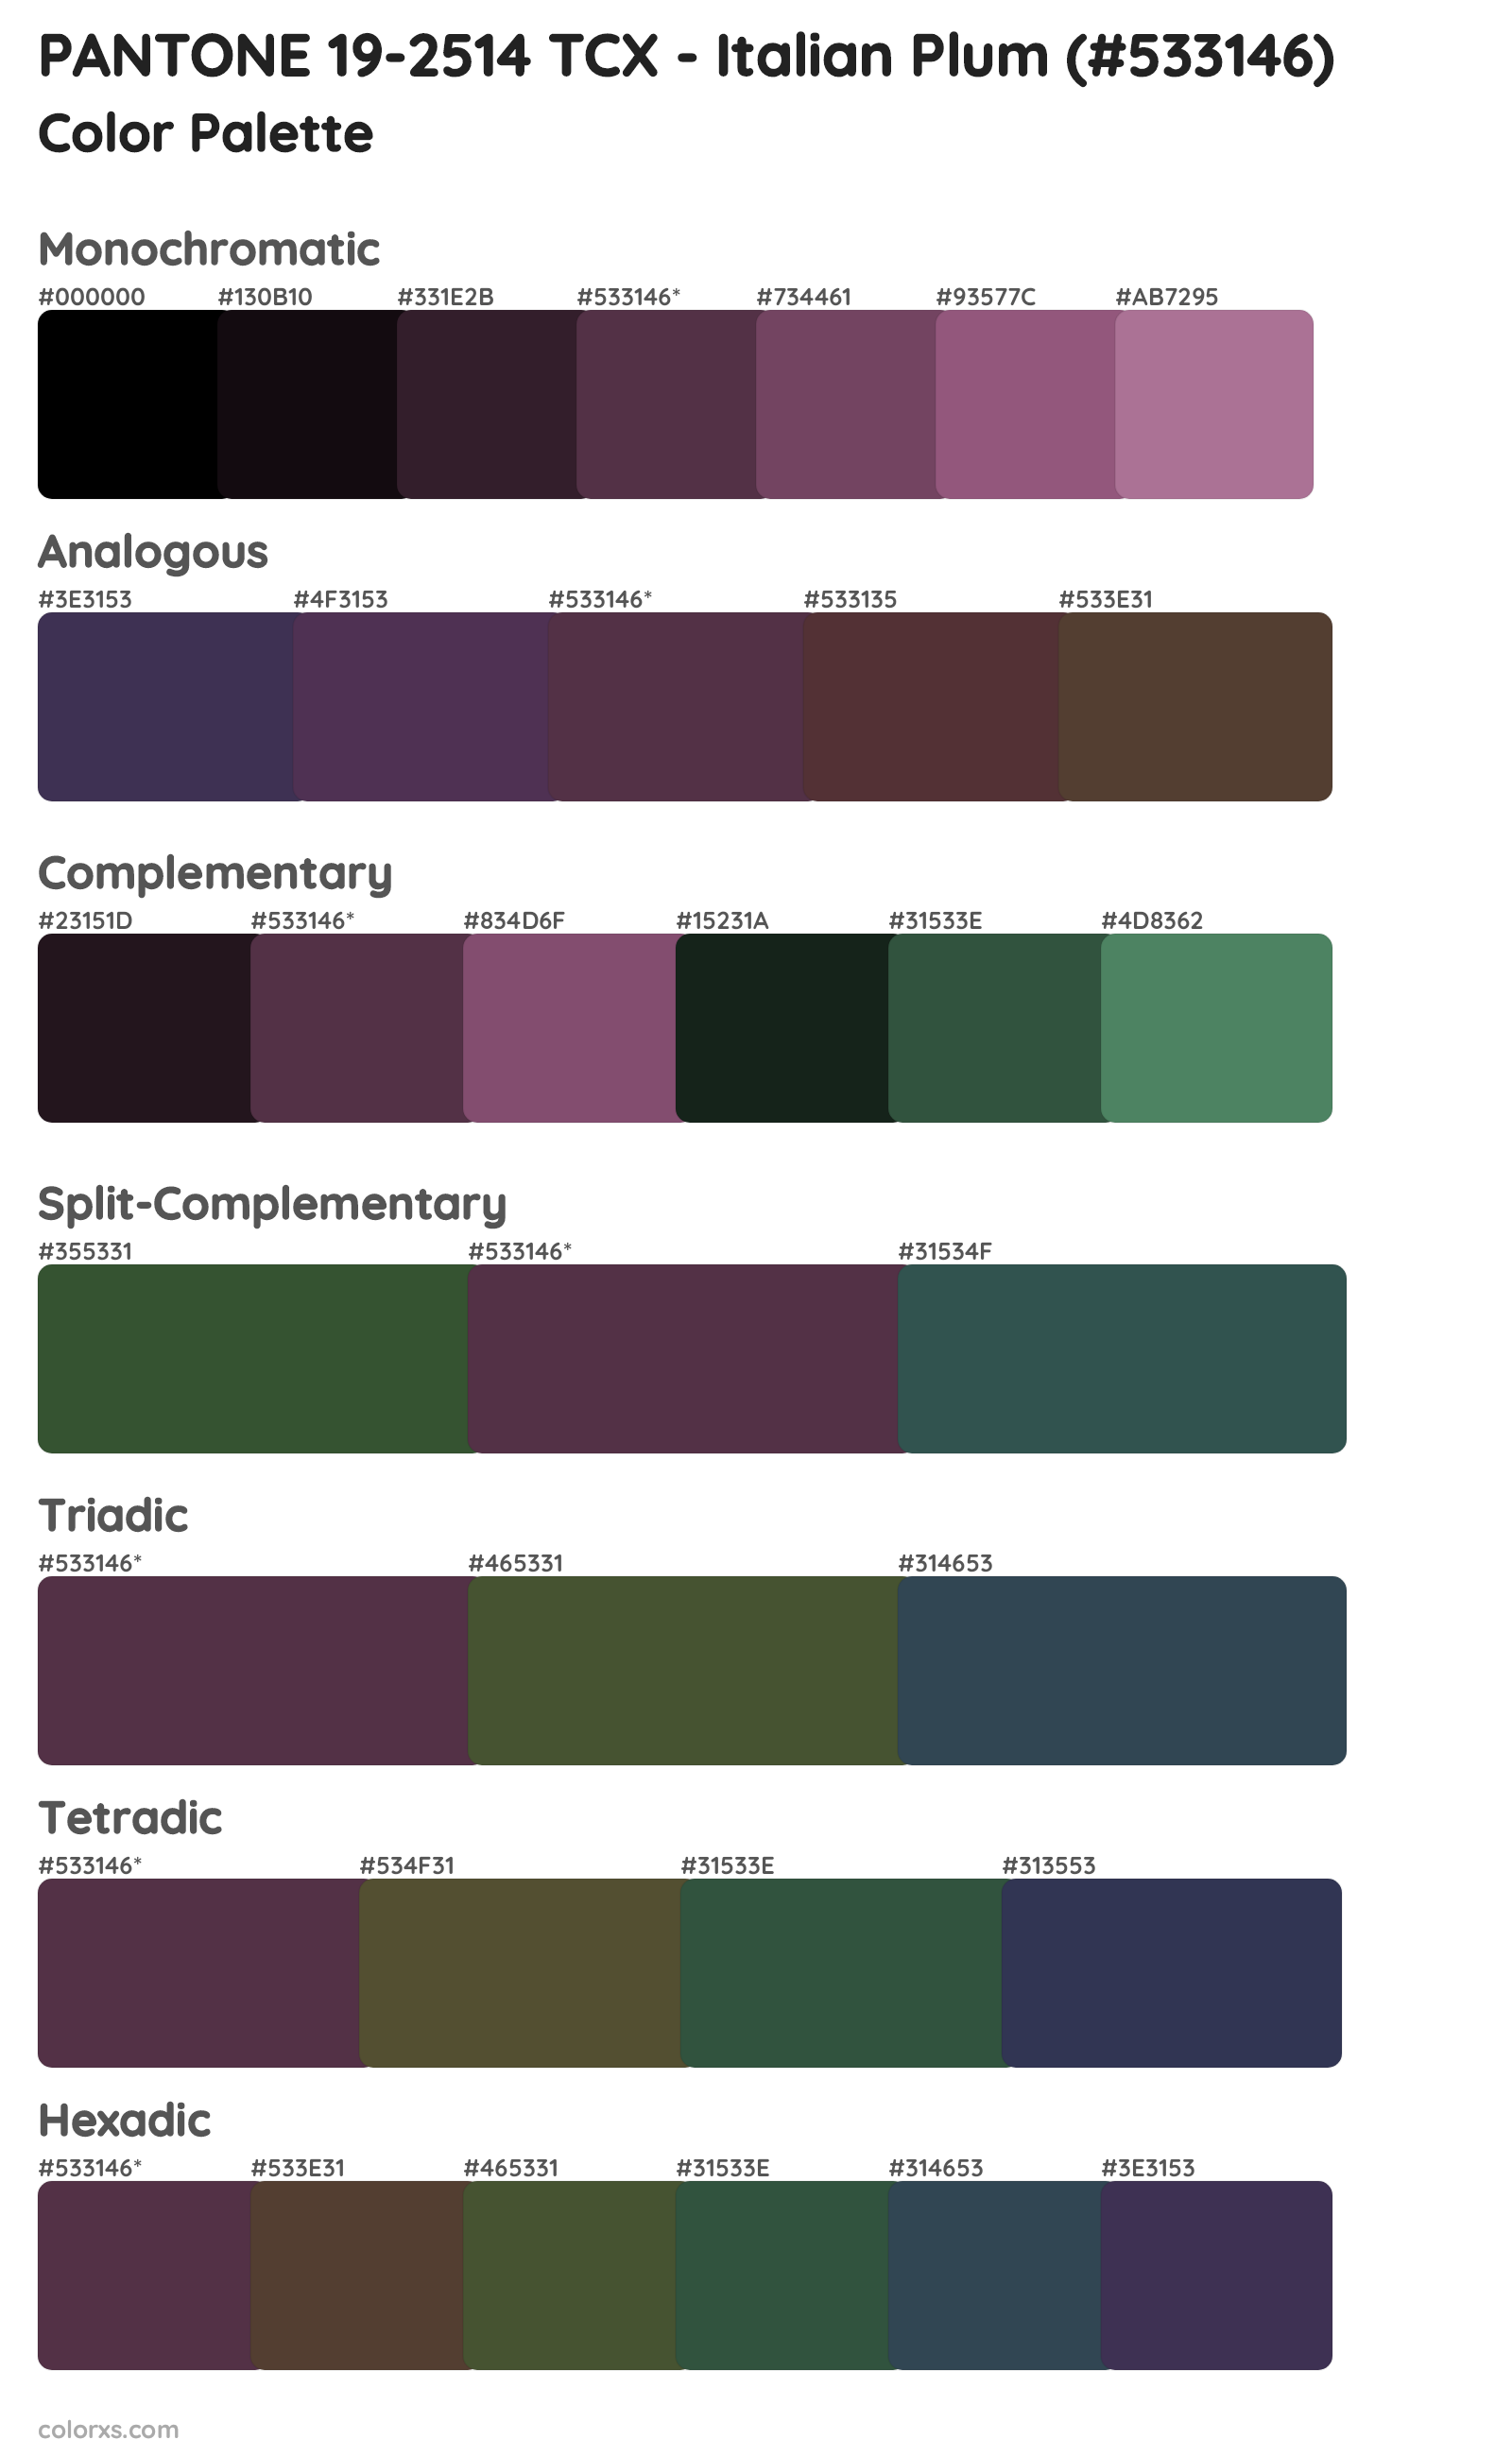 PANTONE 19-2514 TCX - Italian Plum Color Scheme Palettes